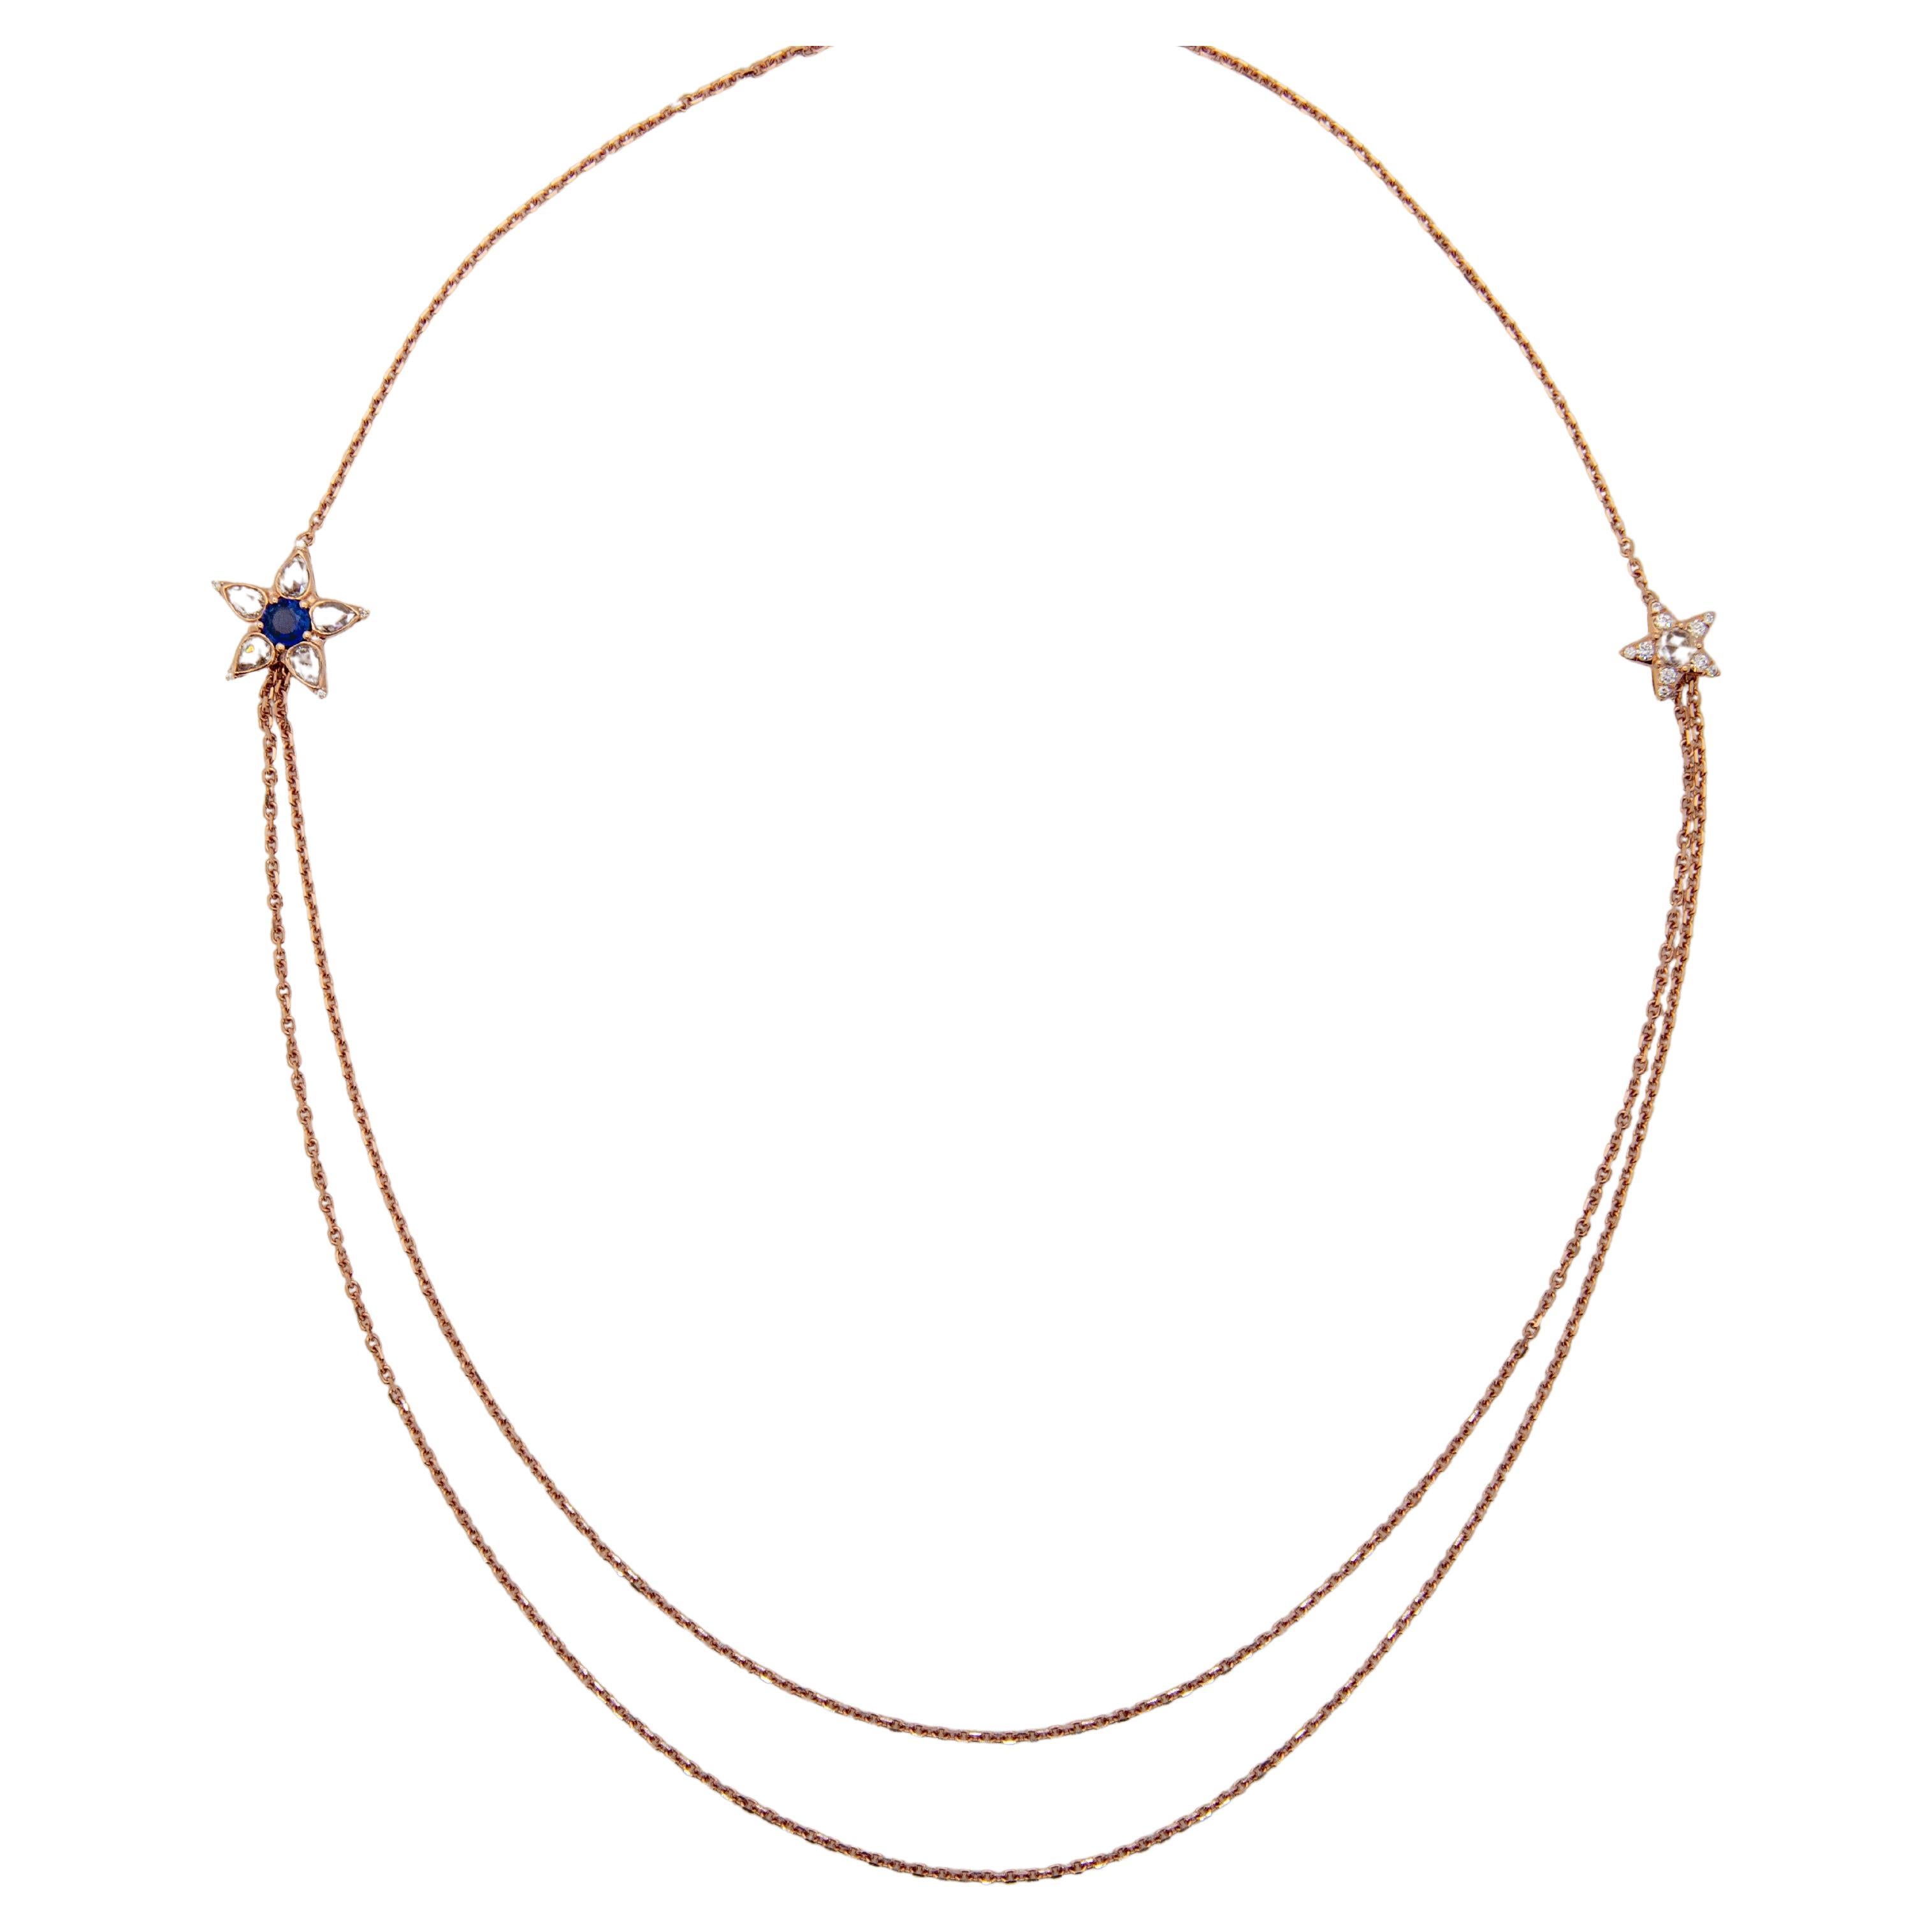 Schöne 18K Rose Gold Halskette mit zwei Sternen und doppelter Kette von unter den Sternen. 

Ceylon-Saphir 0,37ct. 
Diamanten im Rosenschliff, insgesamt 0,78ct. 
Runde Brillanten, insgesamt 0,15ct.

3 Längeneinstellungen. Kürzeste Einstellung 56 cm,